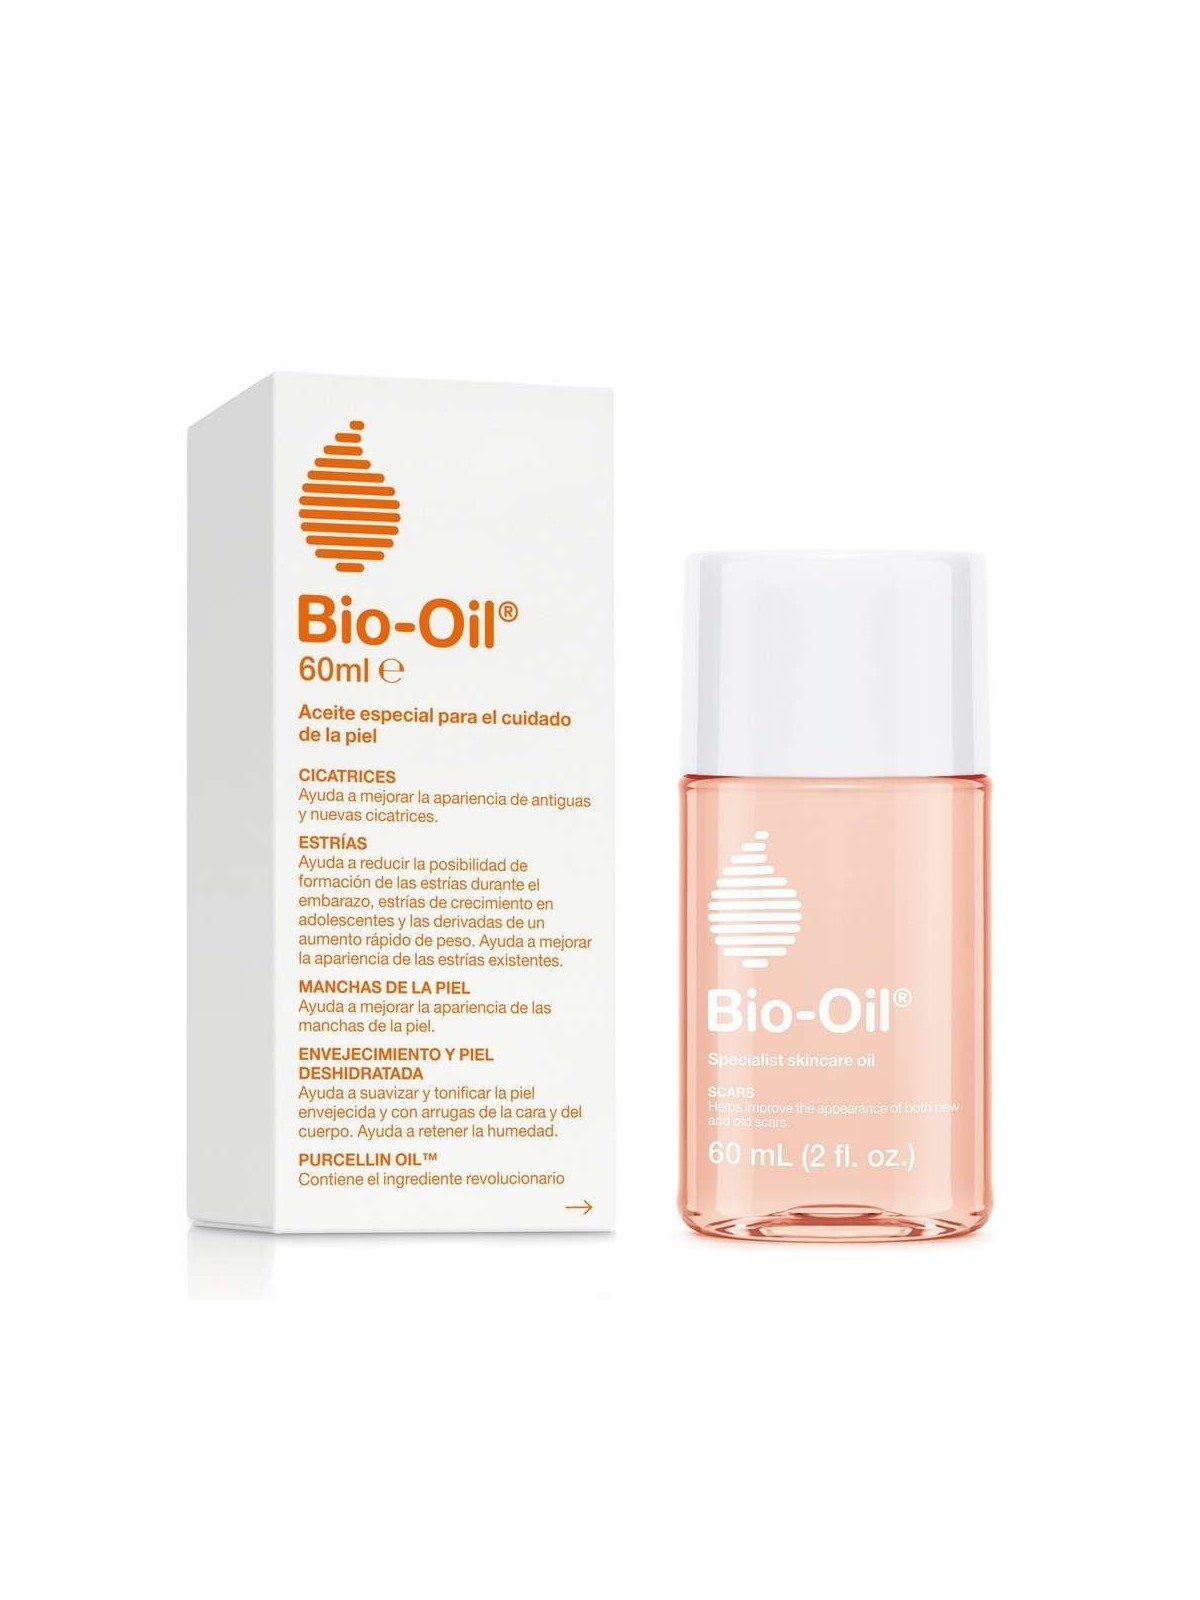 Bio Oil Aceite Para el Cuidado de la Piel - White Salud